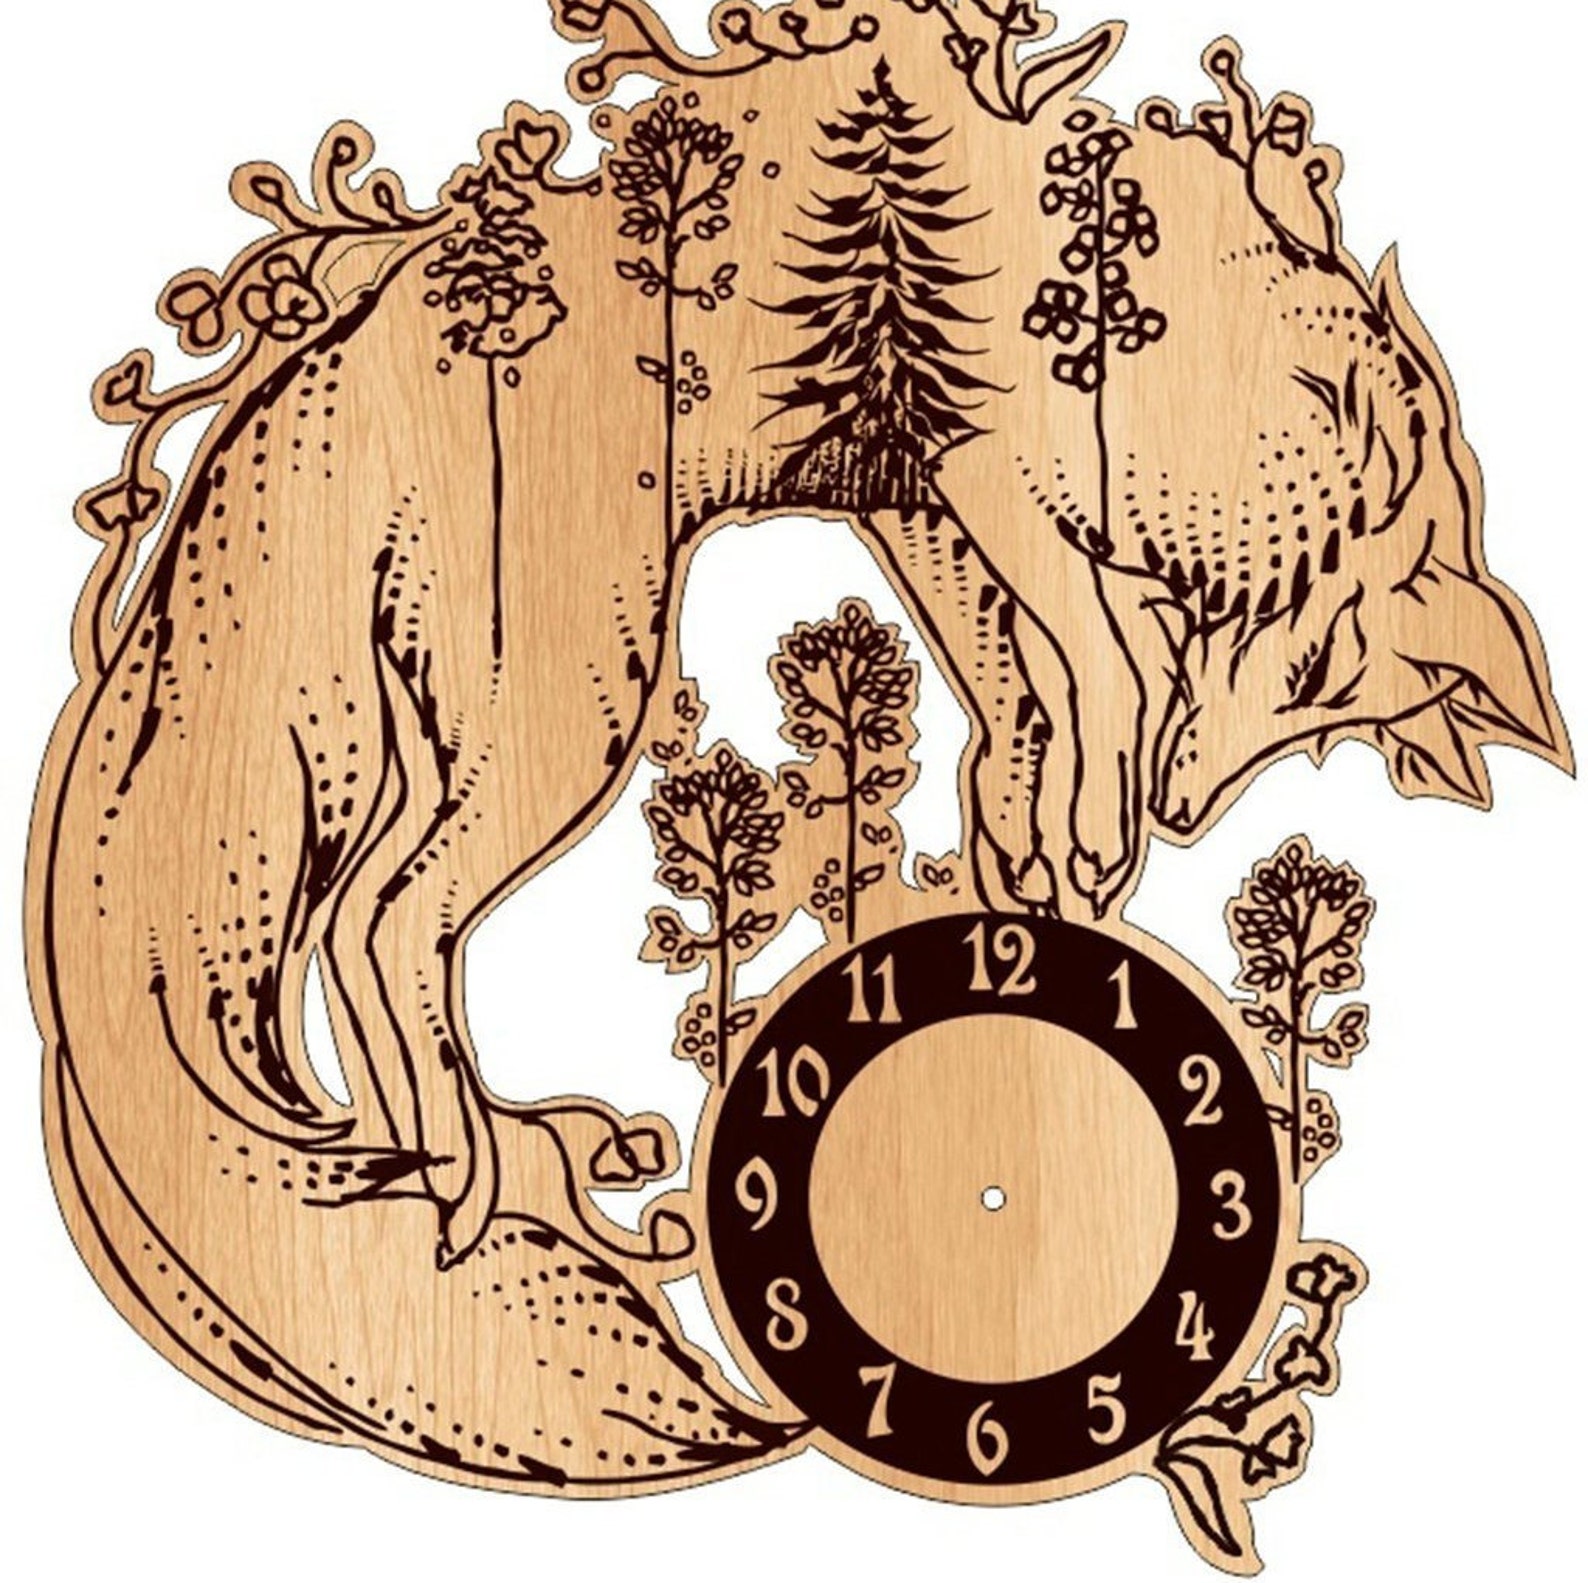 Часы foxes. Настенные часы лиса. Часы с лисом. Часы настенные с лисами. Деревянные часы лиса.